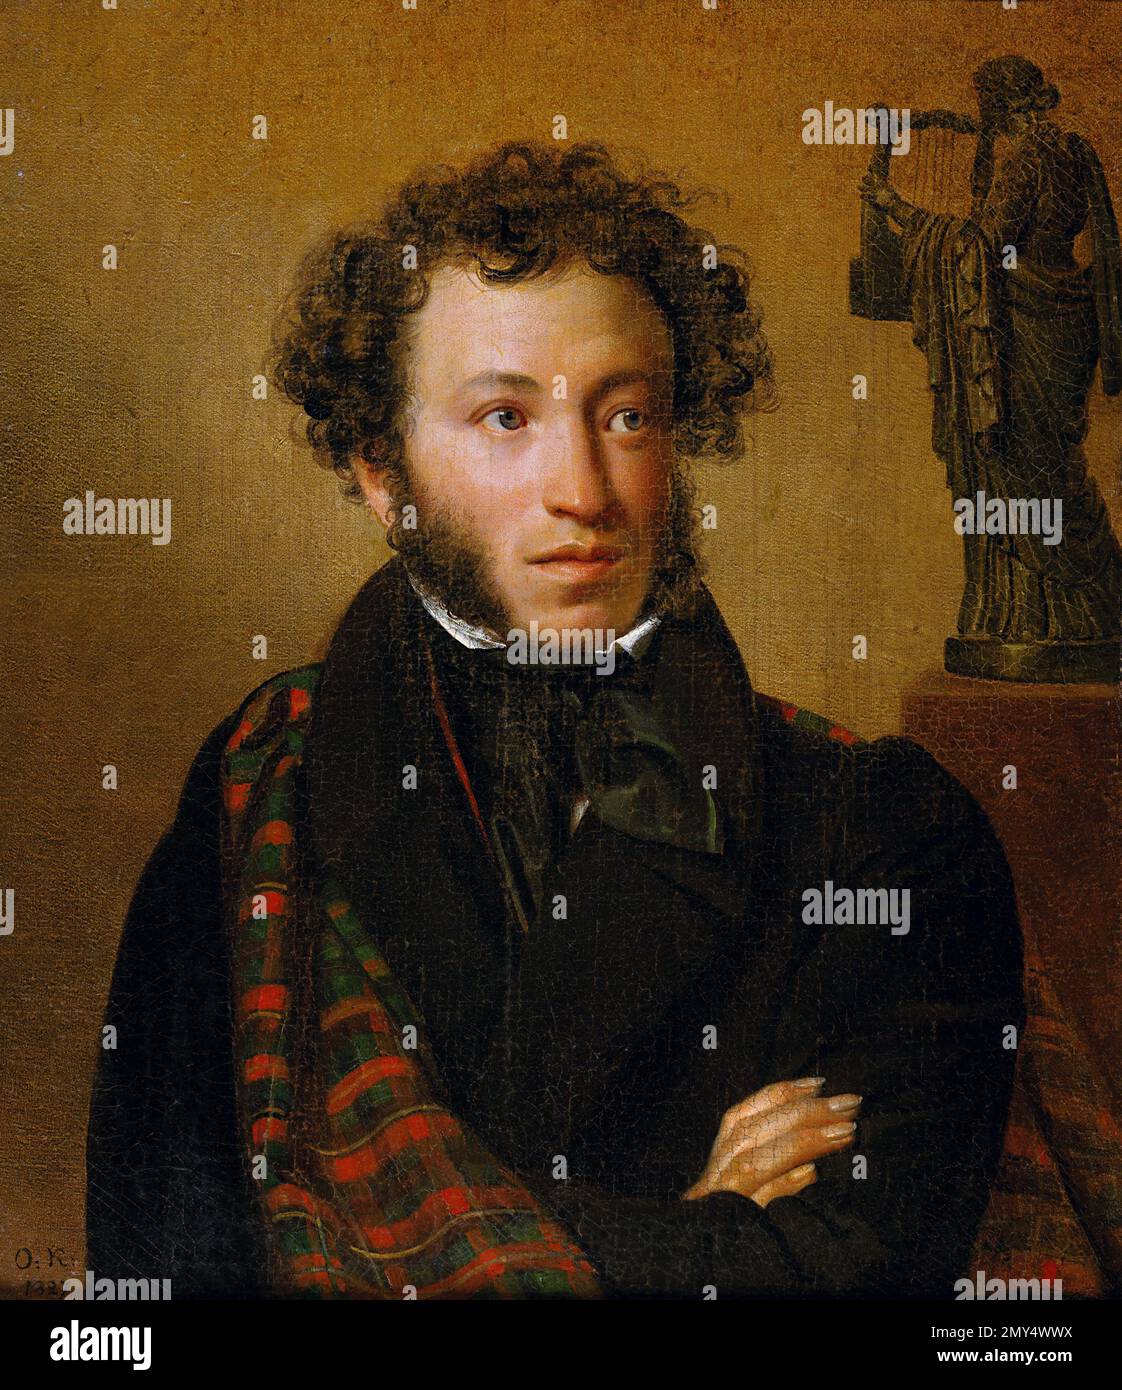 Alexander Pouchkine. Portrait du dramaturge, poète et romancier russe Alexander Sergeyevitch Pushkin (1799-1837) par Orest Kiprensky, 1827 Banque D'Images